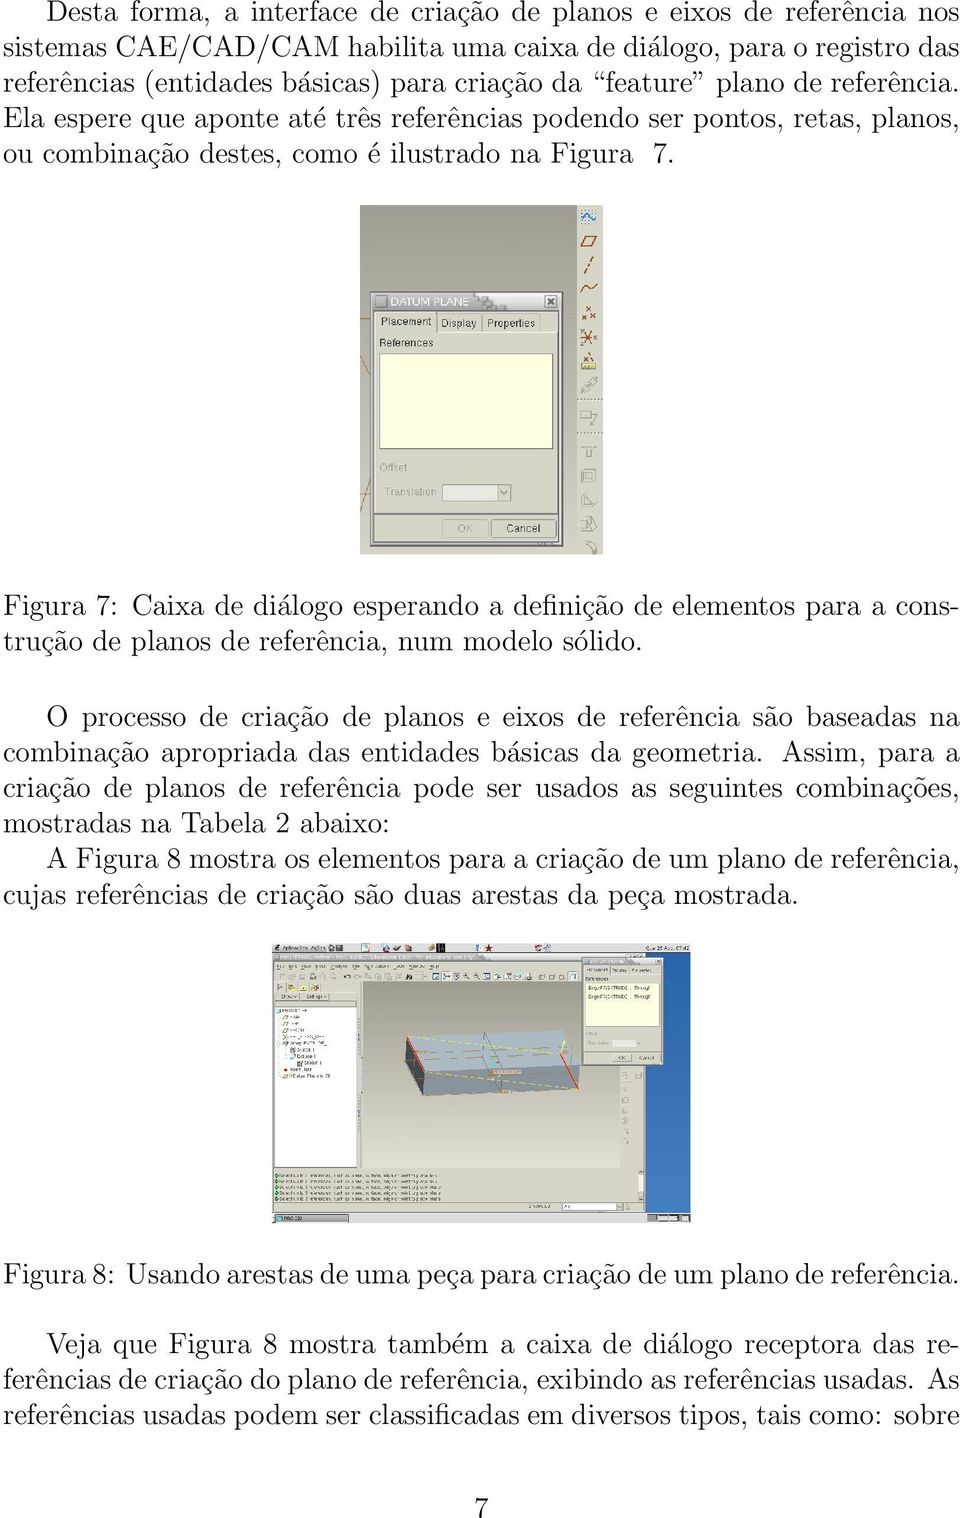 Figura 7: Caixa de diálogo esperando a definição de elementos para a construção de planos de referência, num modelo sólido.